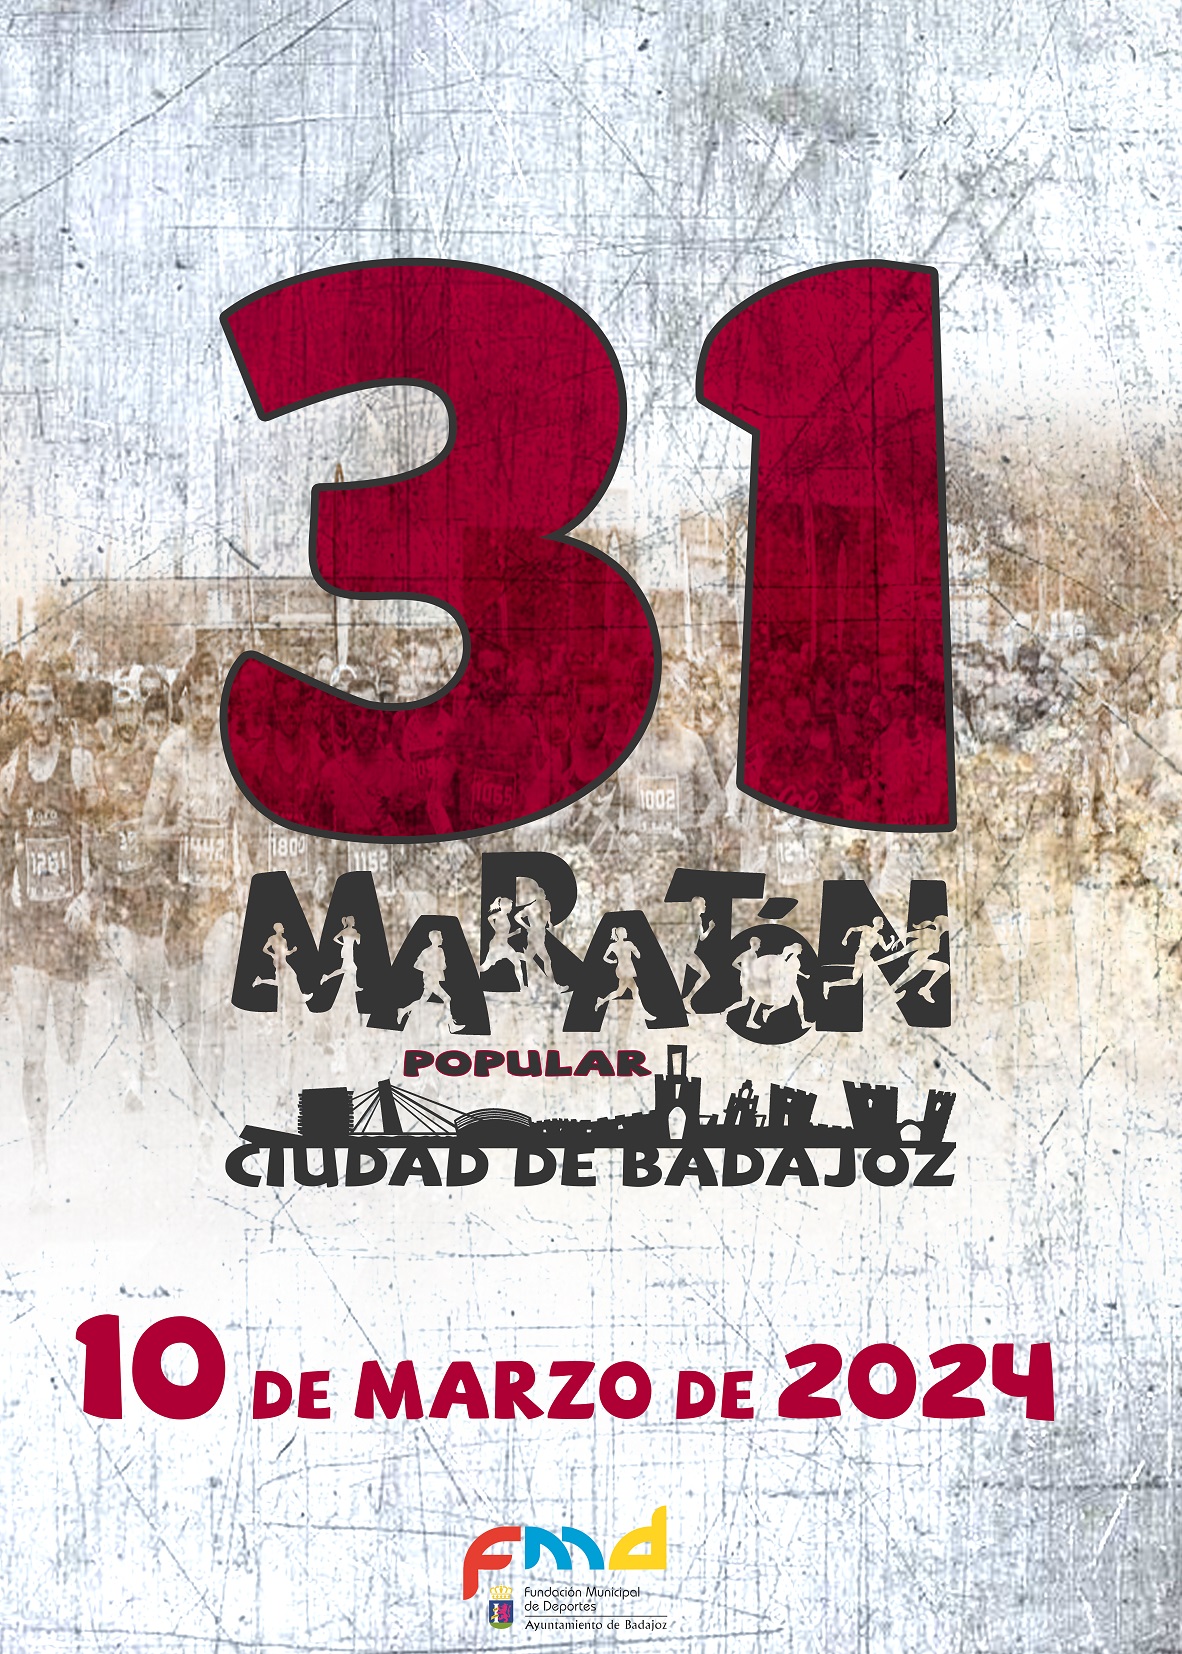 Badajoz Carnival. 09/02/2024. Fiestas in Badajoz